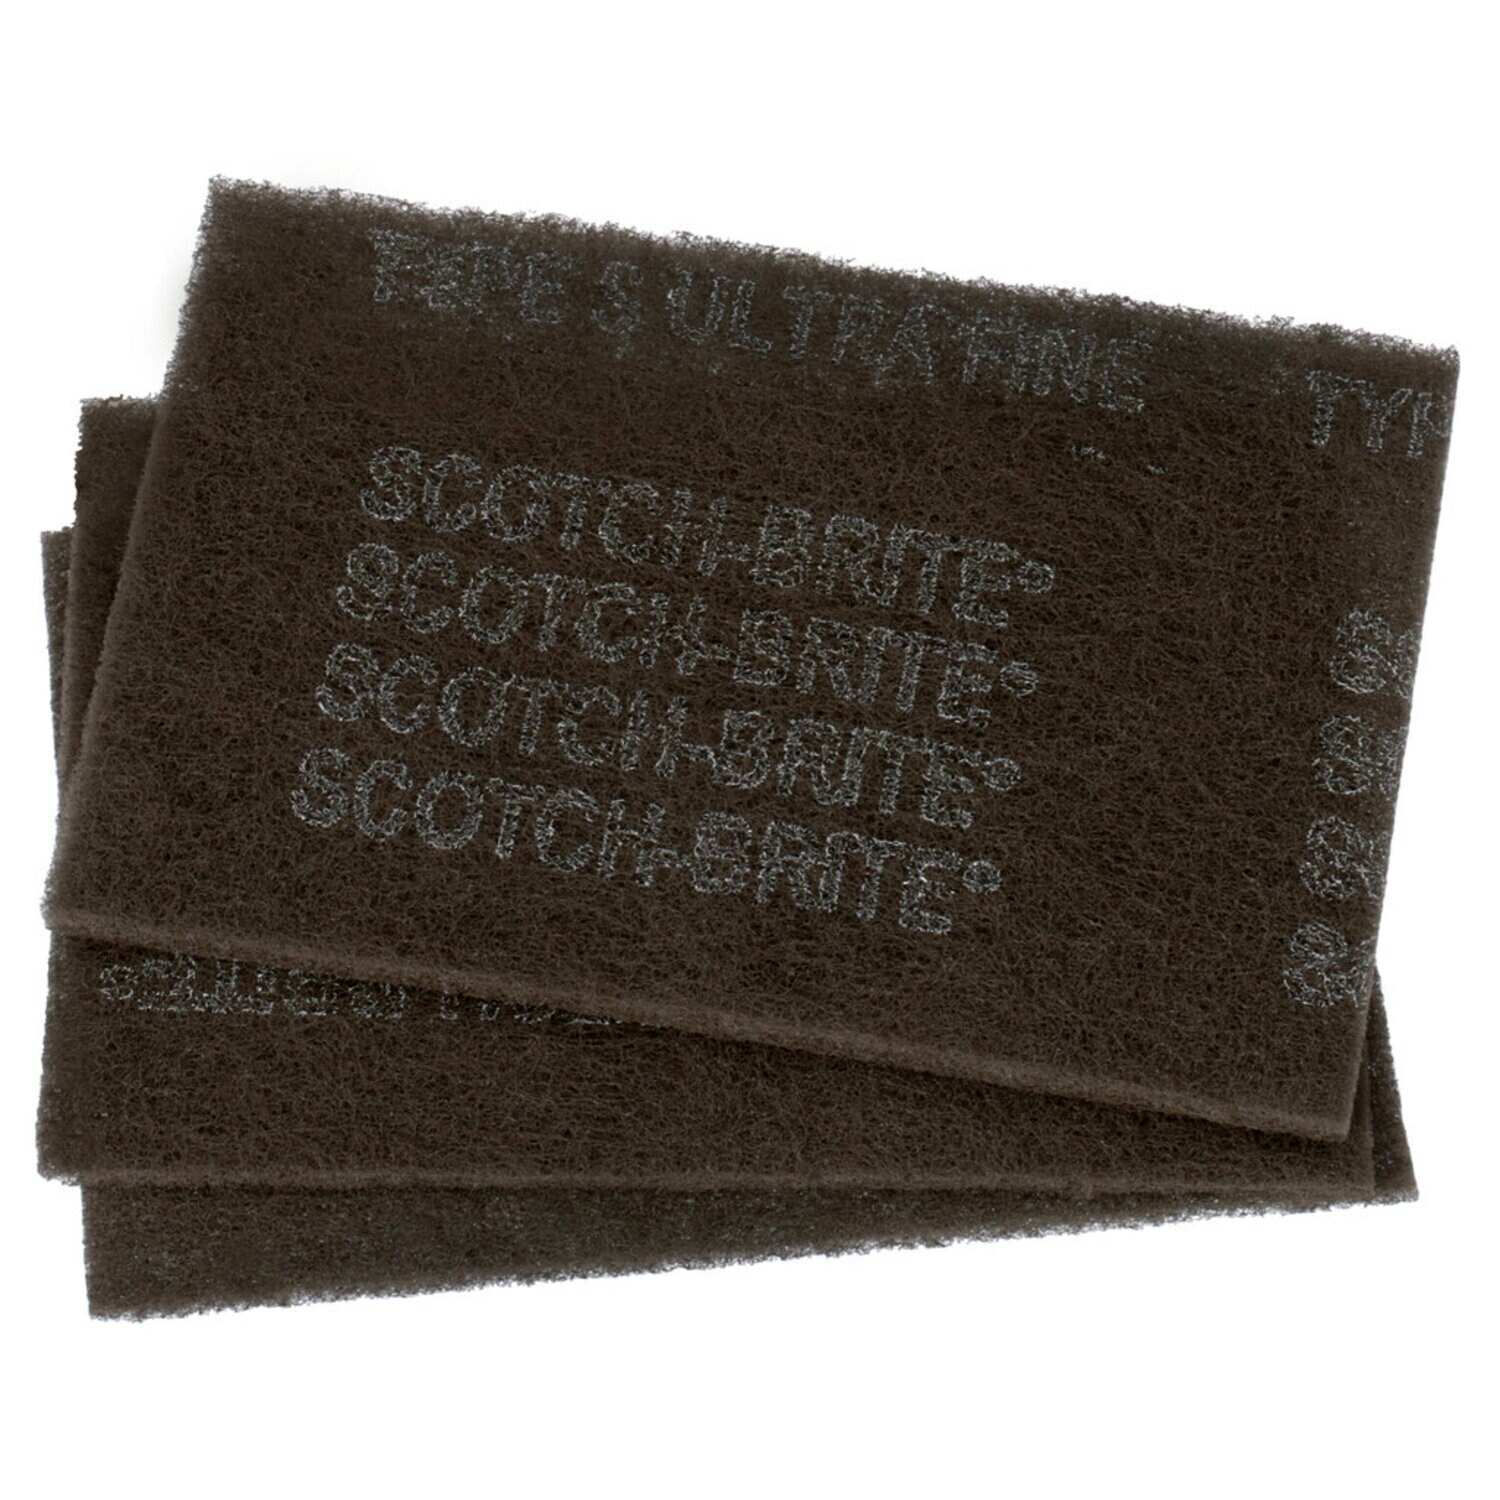 7000121089 - Scotch-Brite Hand Pad 7448, 37448, HP-HP, SiC Ultra Fine, Gray, 9 in x 6 in, 3/Pack, 10 Packs/Case